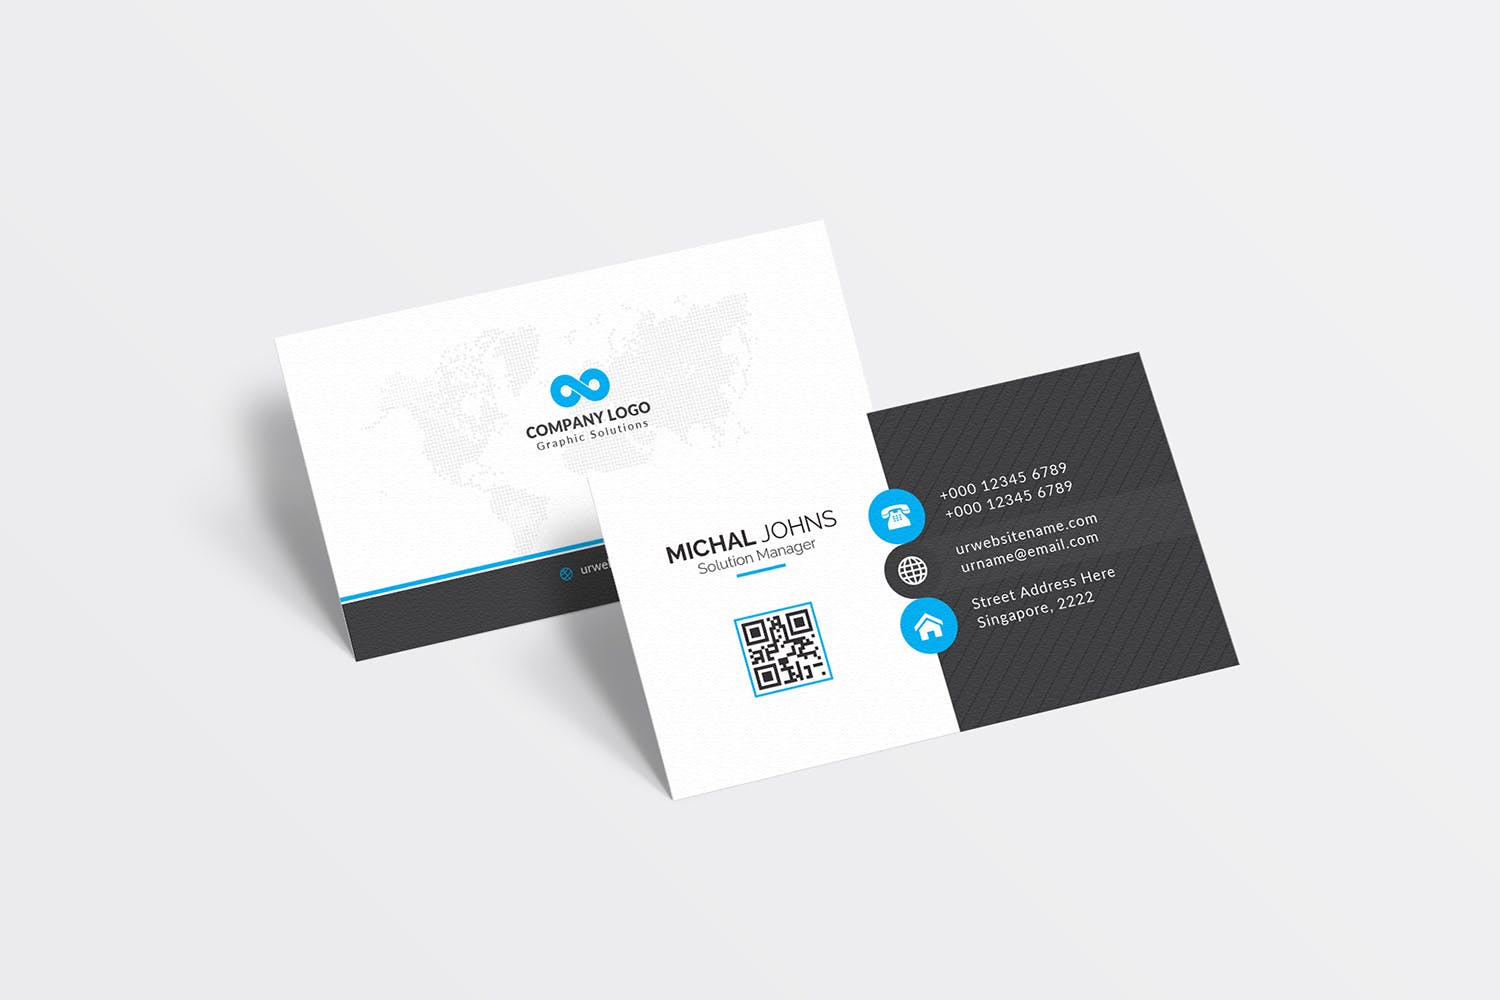 经典排版风格企业蚂蚁素材精选名片模板 Business Card插图(1)